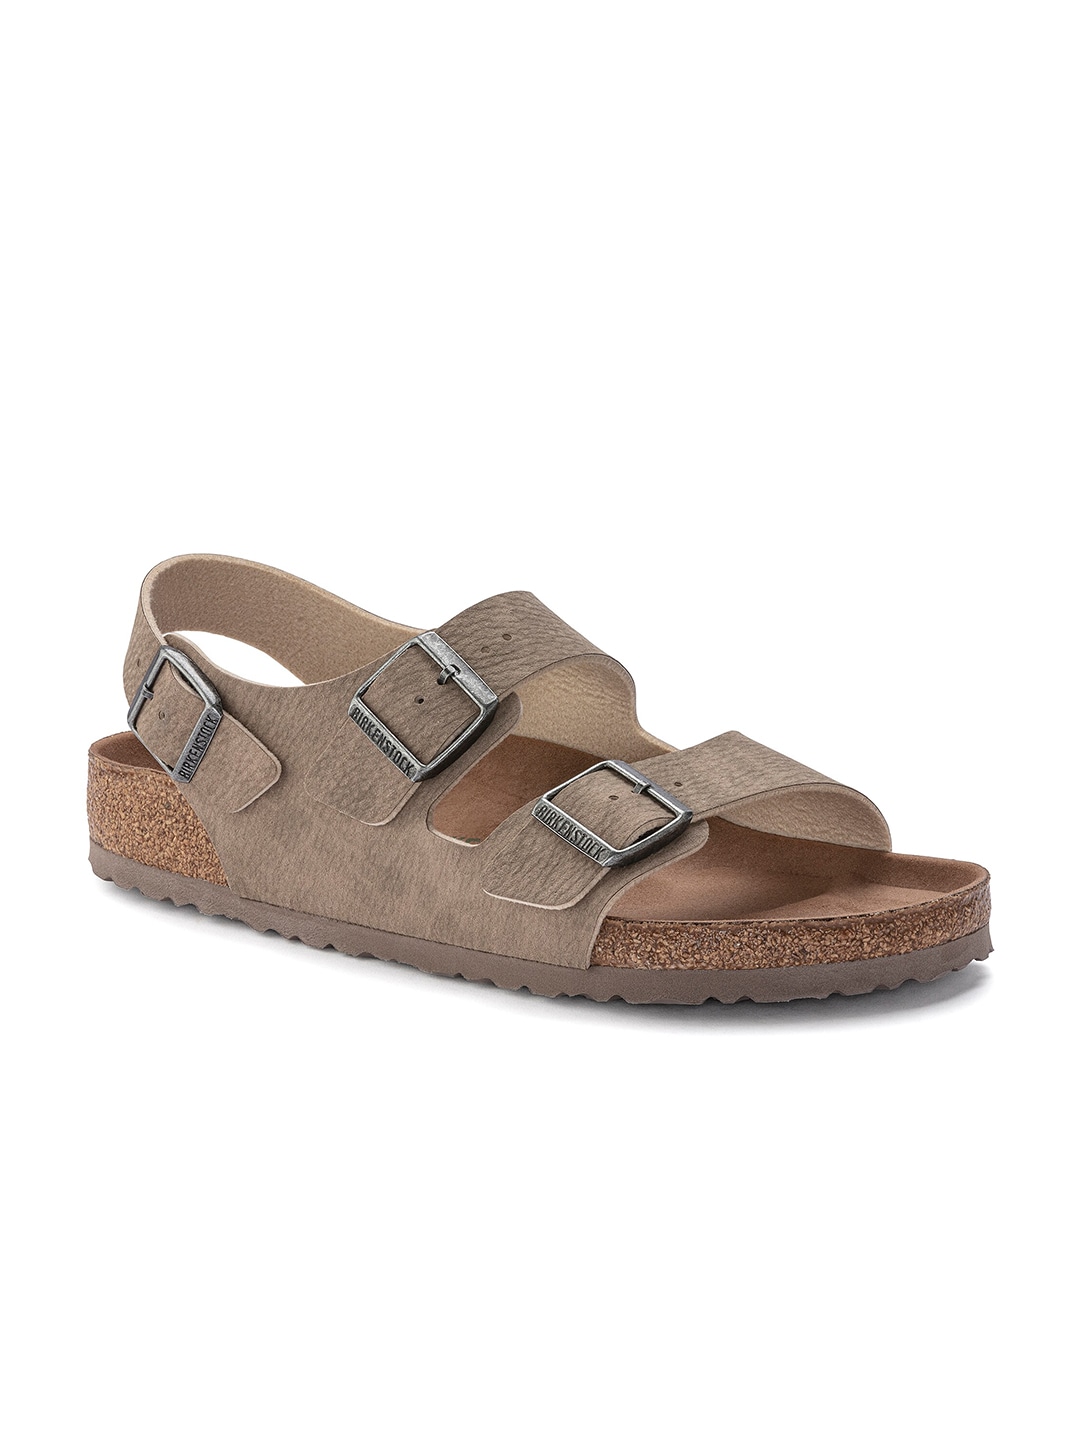 Birkenstock Men Brown Leather Comfort Sandals